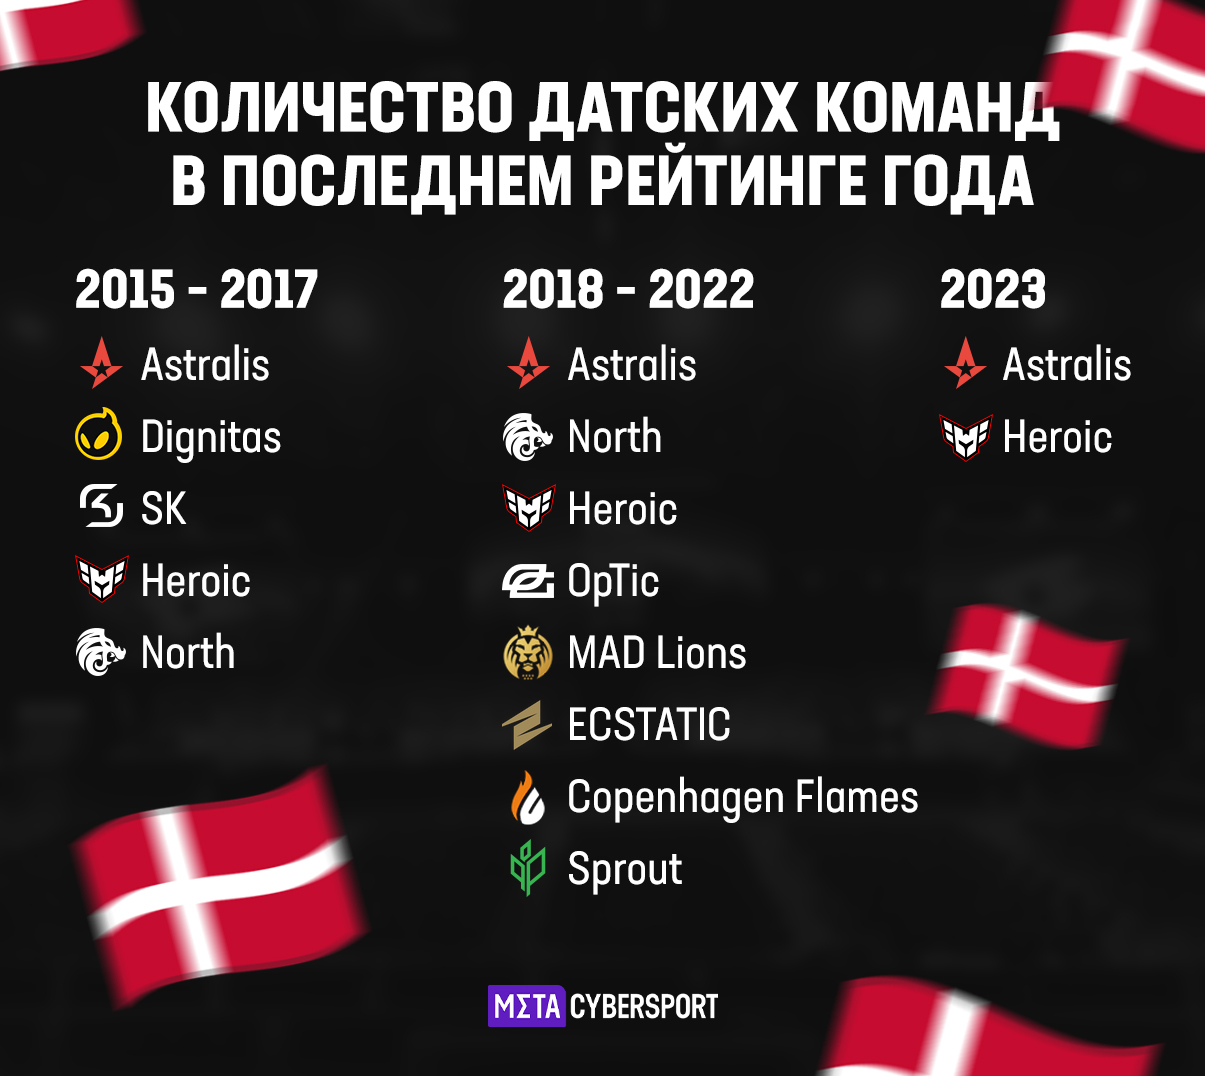 Датские команды в финальном командном рейтинге года